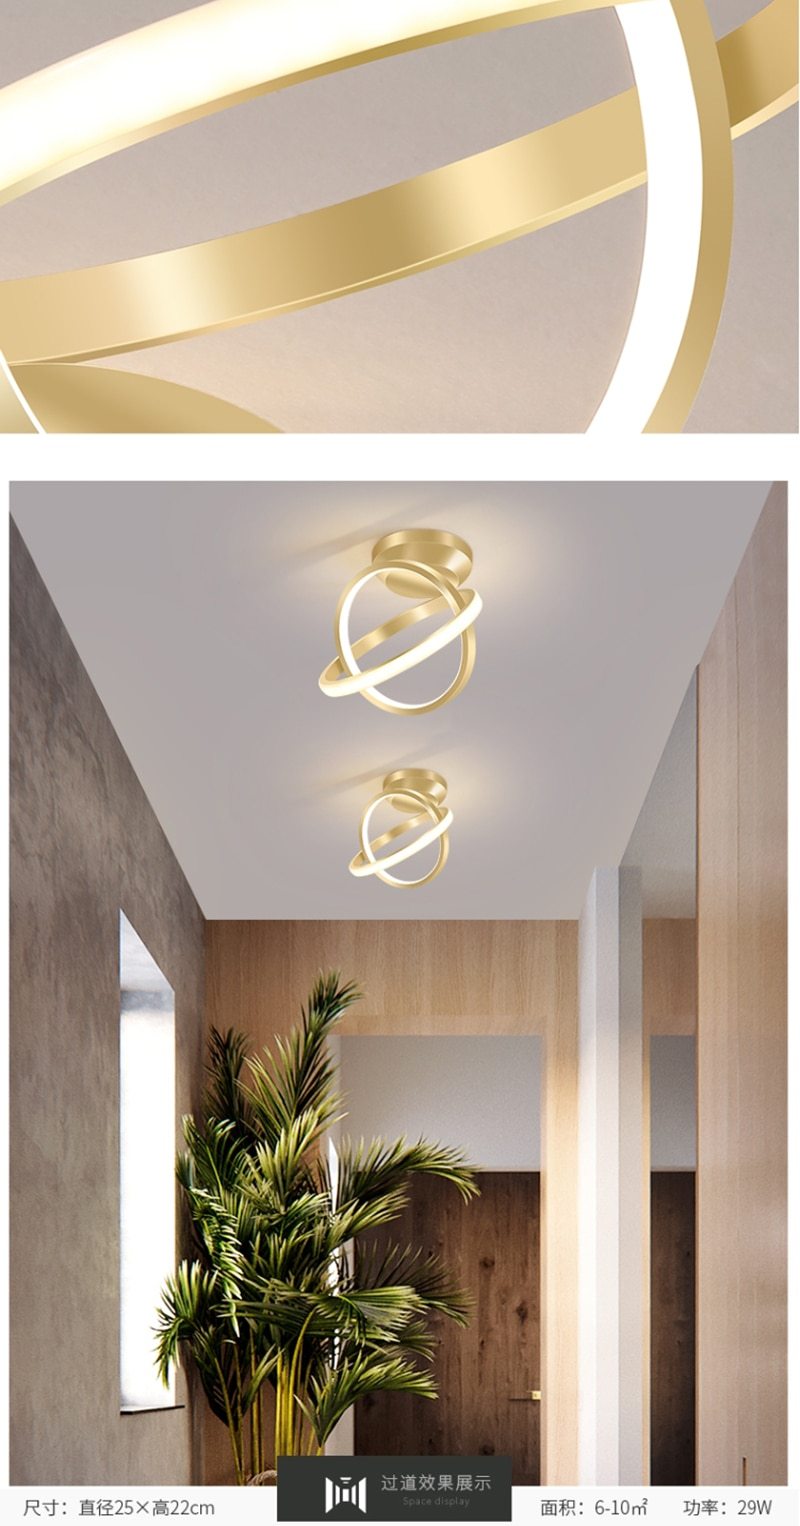 Lalit - Multi Disc Ceiling Light